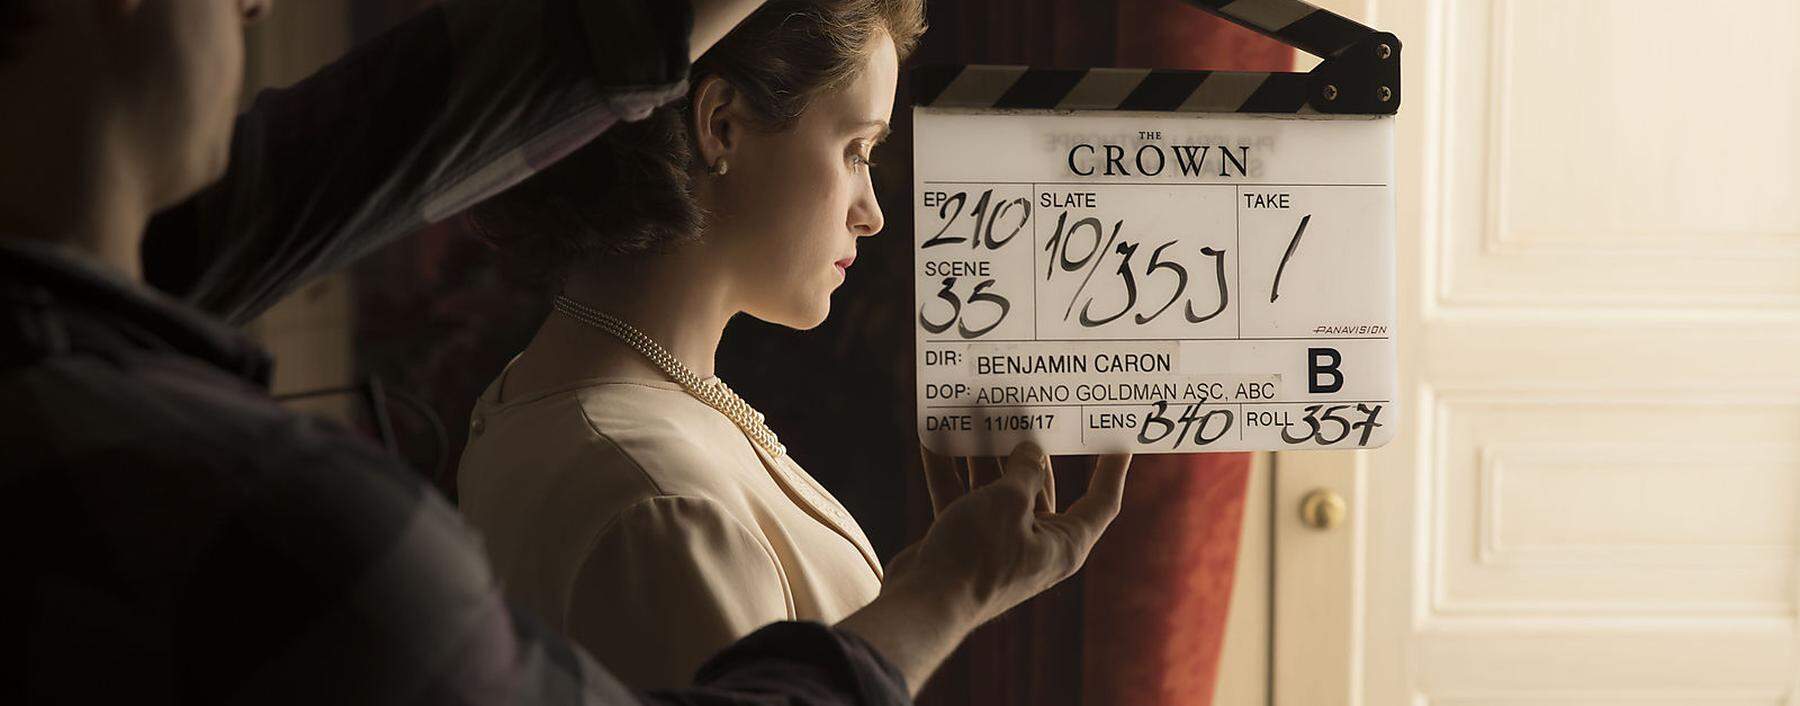 Aufsehen. Ende des Jahres soll die sechste und letzte Staffel von „The Crown“ ausgestrahlt werden. Die Serie sorgte für viel Wirbel, insbesondere in Großbritannien. Zwar ist die Handlung fiktional, trotzdem orientiert sich die Handlung an den Leben der britischen Royals. 